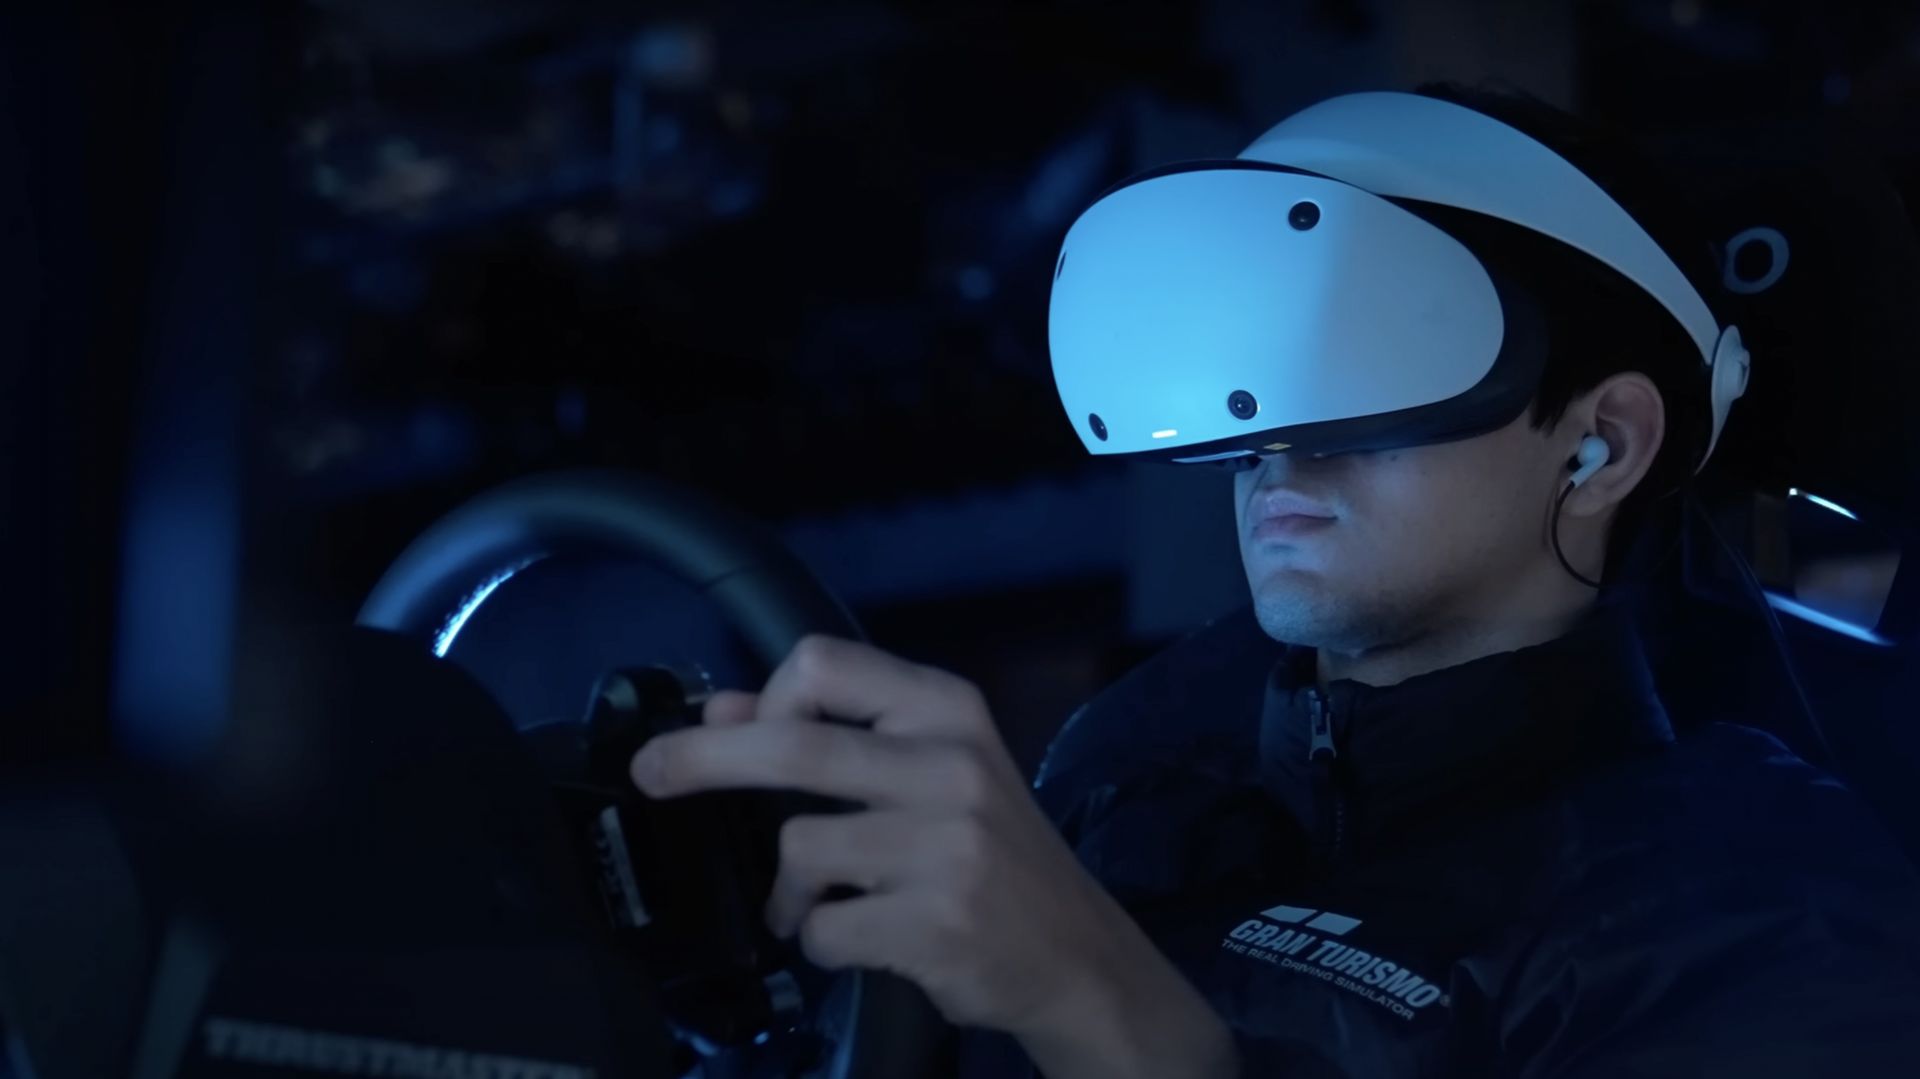 PS5 PSVR : tout ce qu'il faut savoir du nouveau casque de réalité virtuelle  de Sony